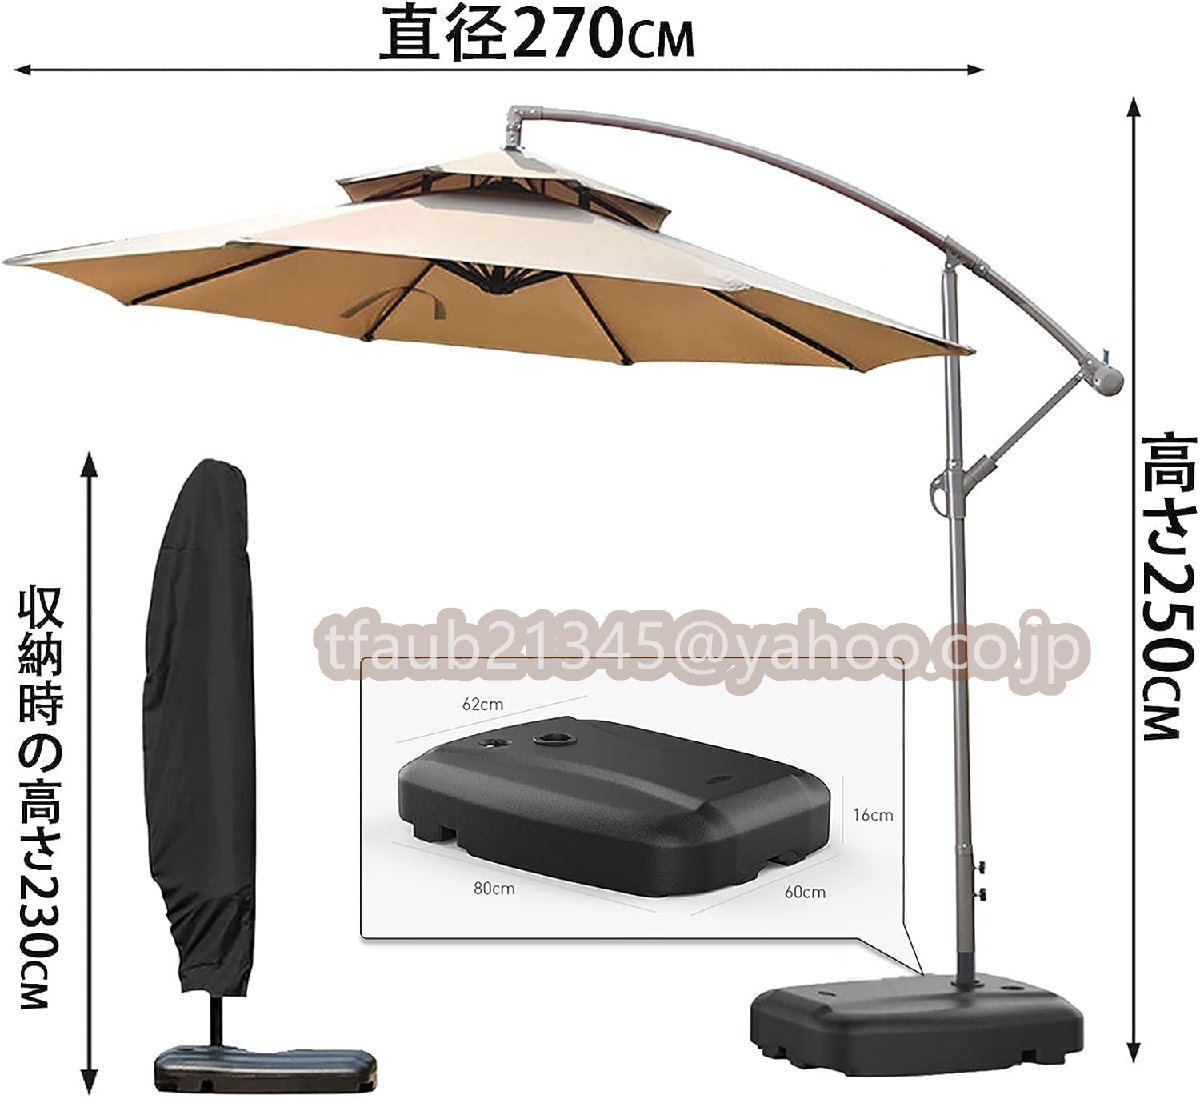  зонт сад зонт большой способ . сильный ( примерно ) диаметр 270cm веранда висячий зонт UV cut водоотталкивающий регулировка угла основа . с чехлом современный 